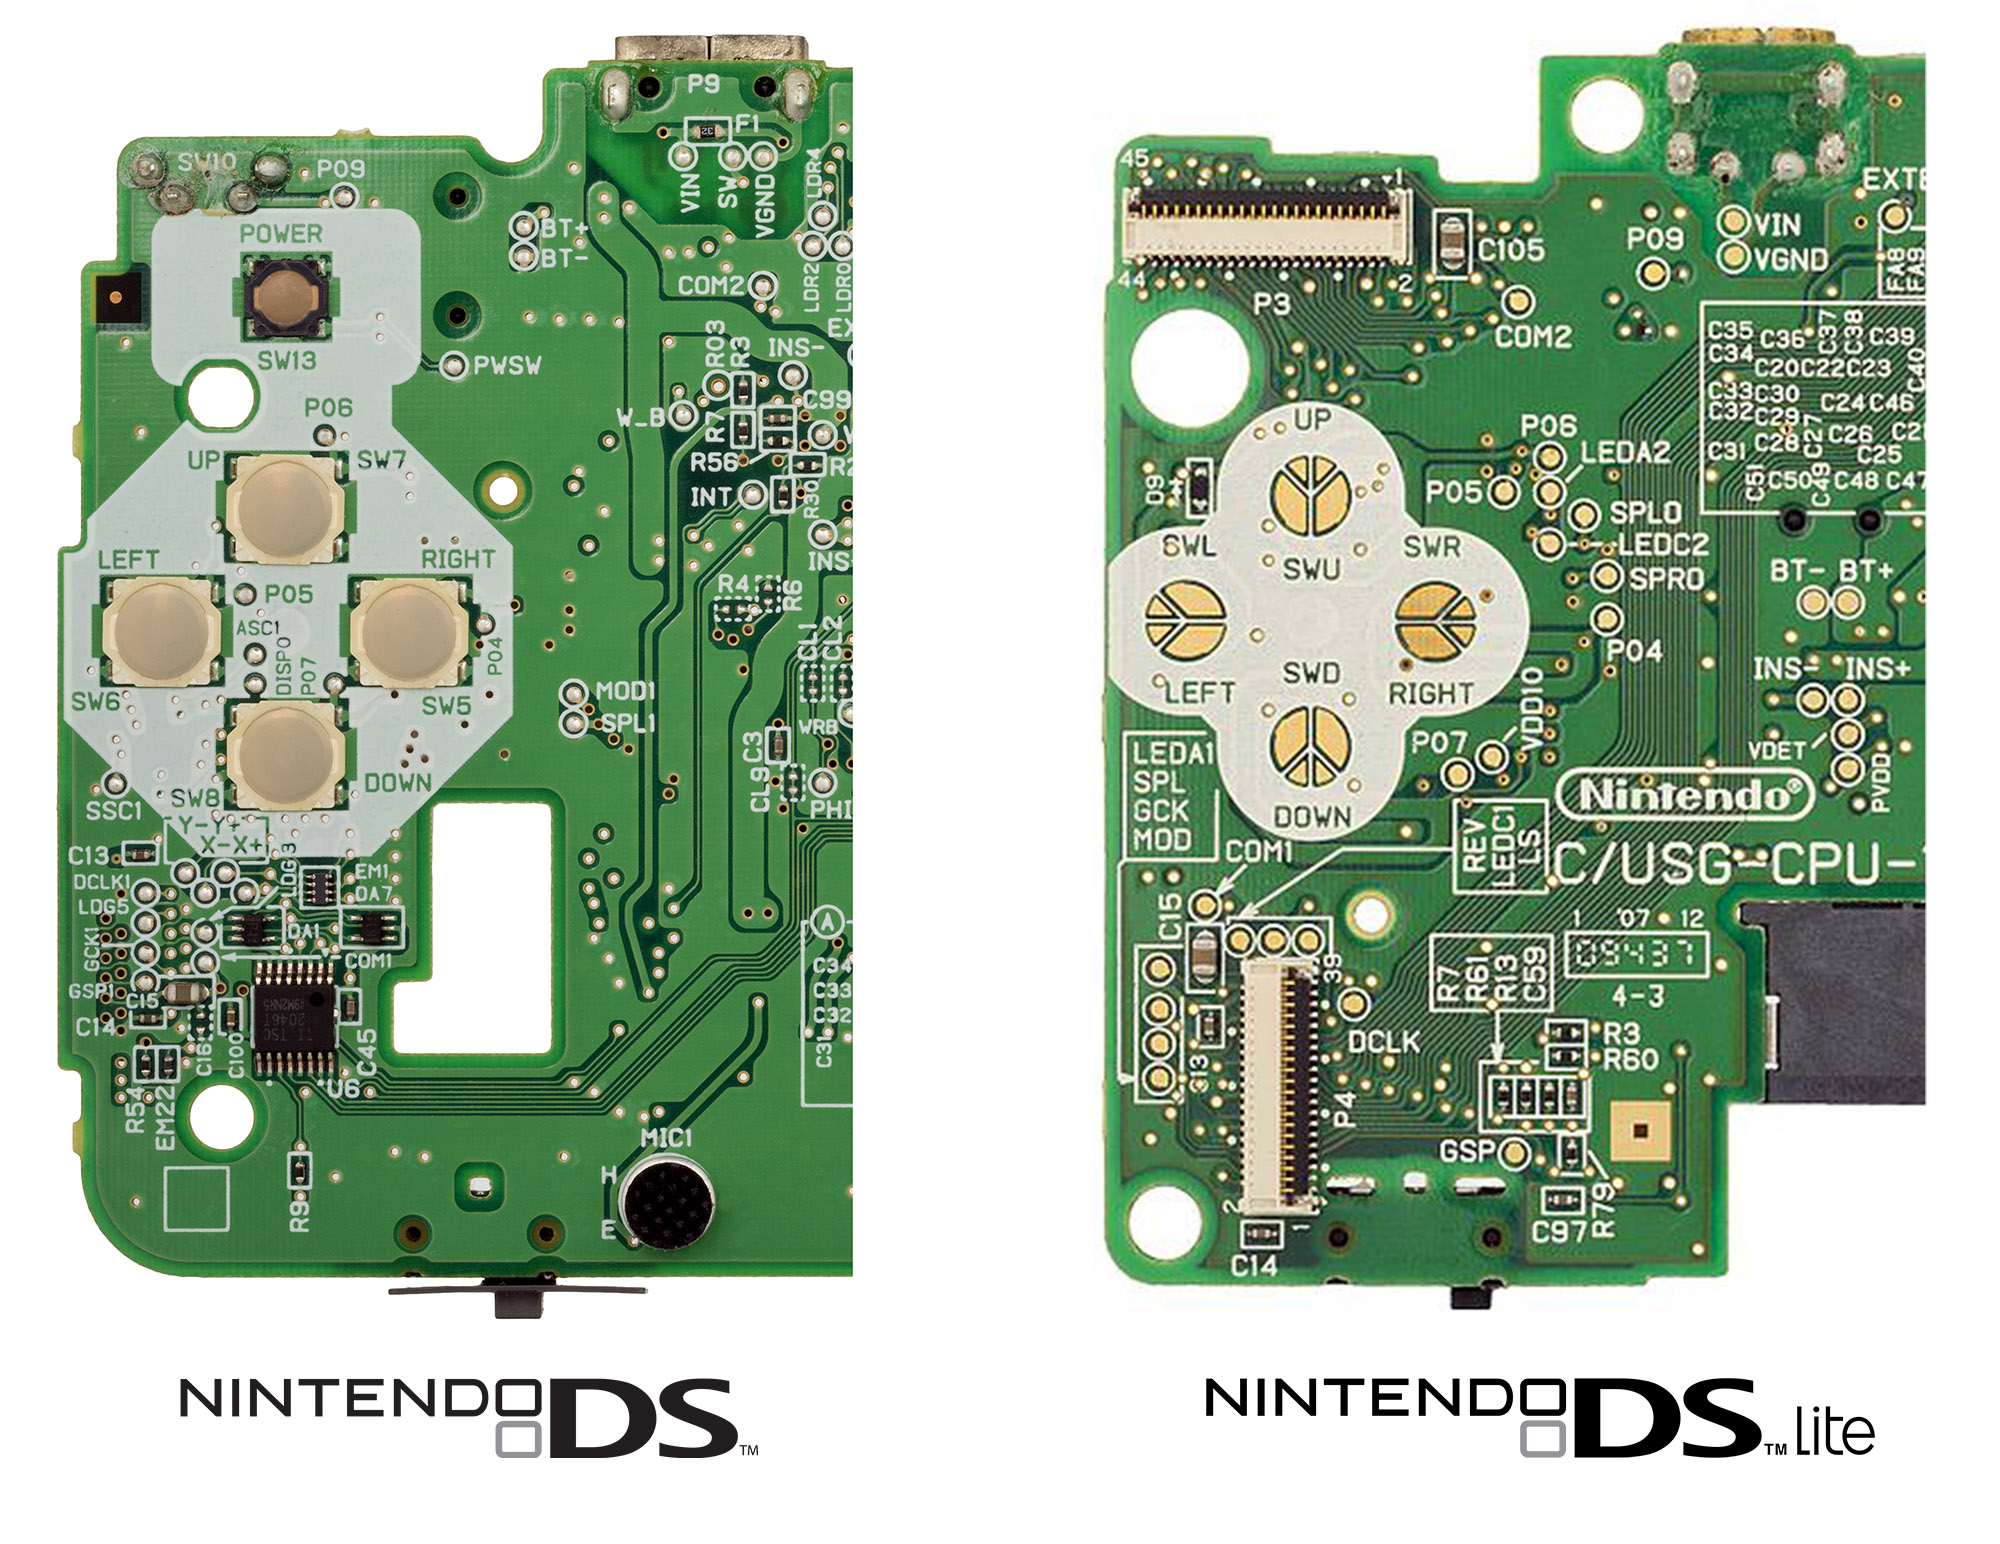 Nintendo DS Lite и Nintendo DS сравнение кнопок